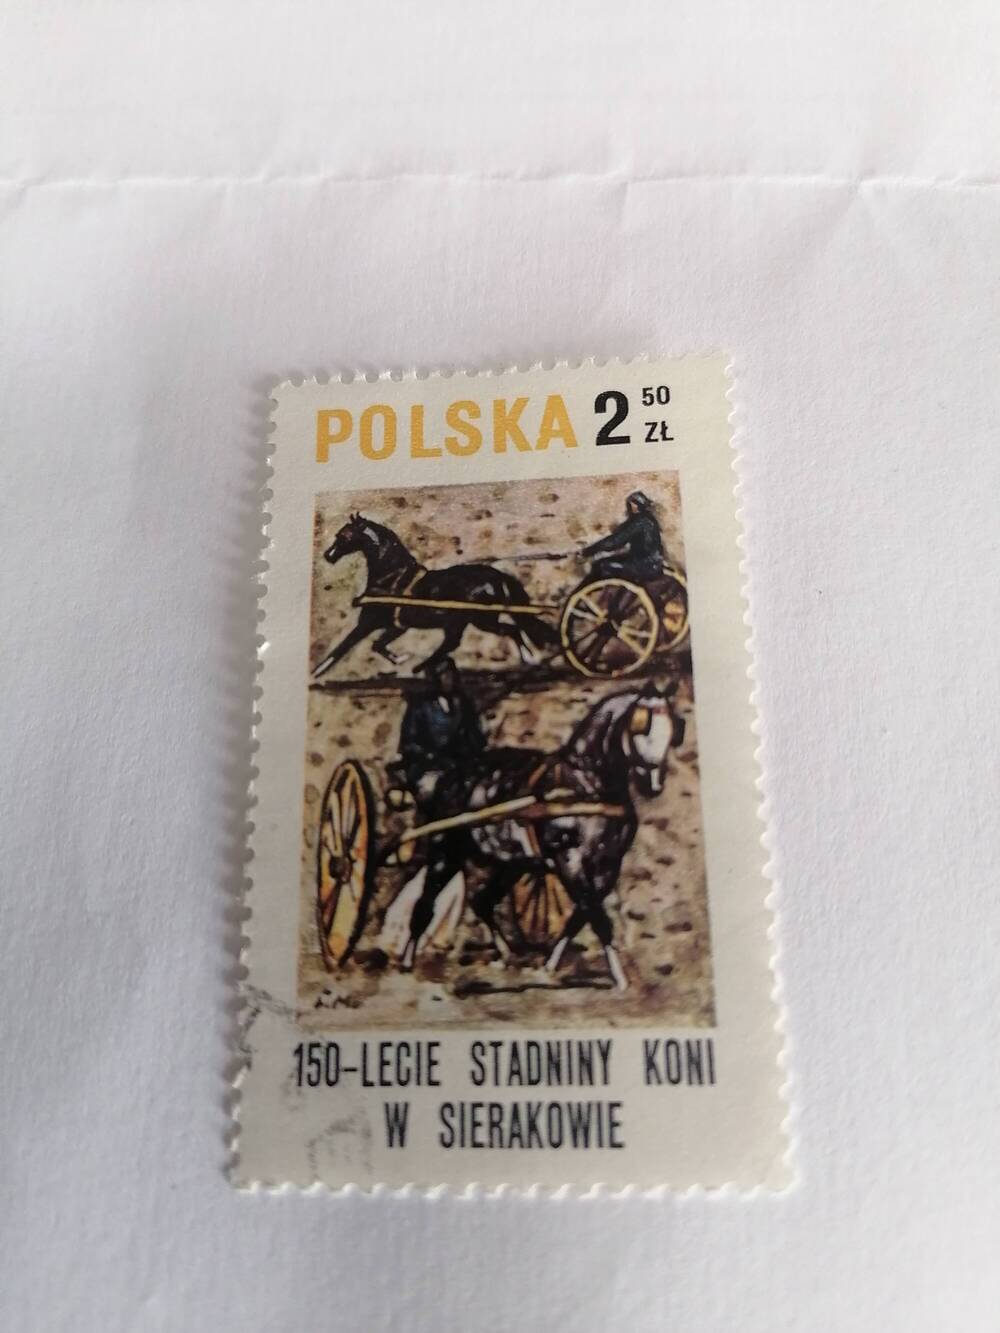 Марка почтовая гашеная, Польша,1980 г, Polska, 150-lecie stadnina koni w sierakowice